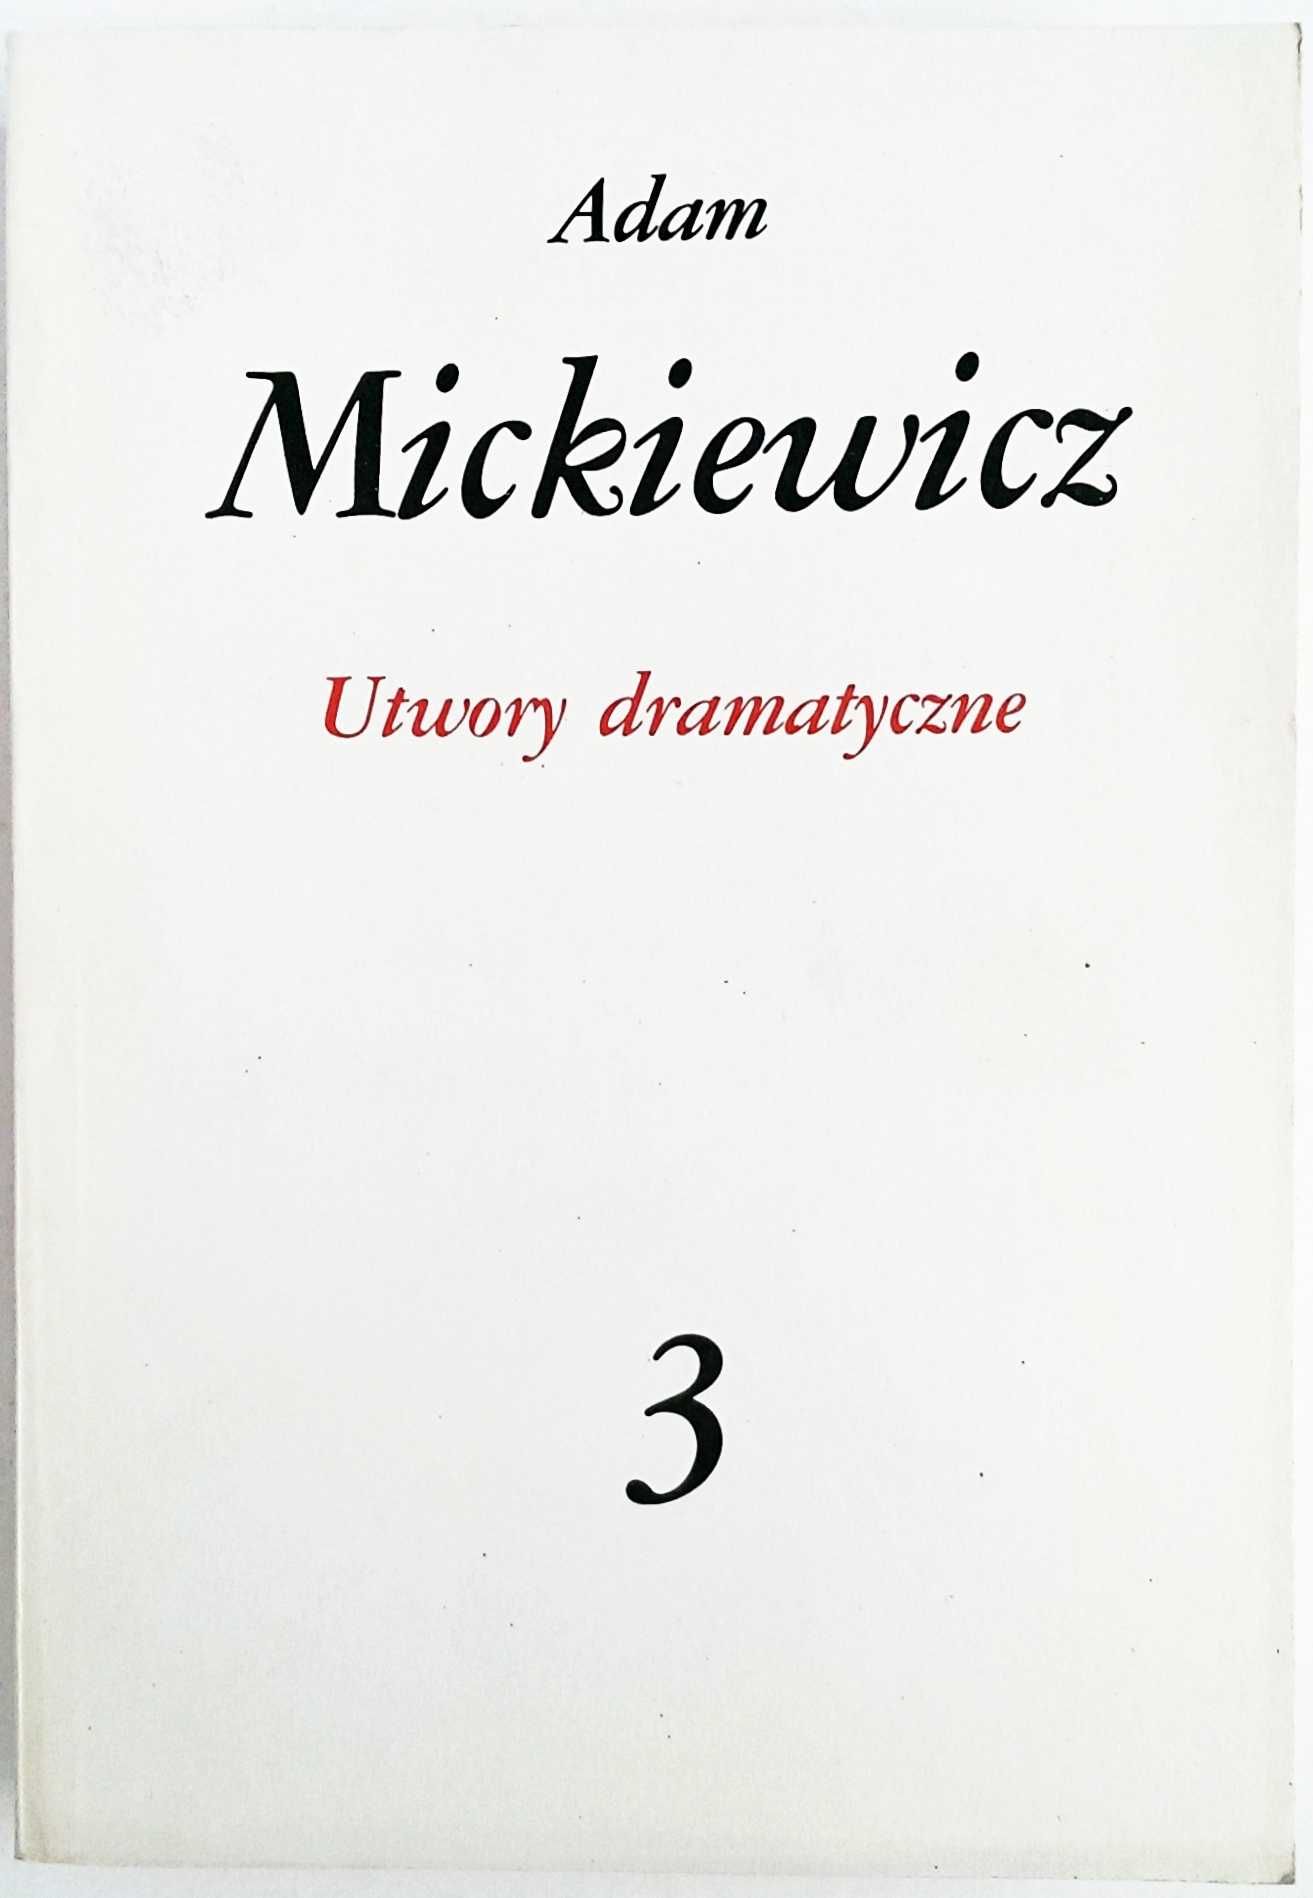 Adam Mickiewicz Dzieła Poetyckie tom 3: Utwory dramatyczne